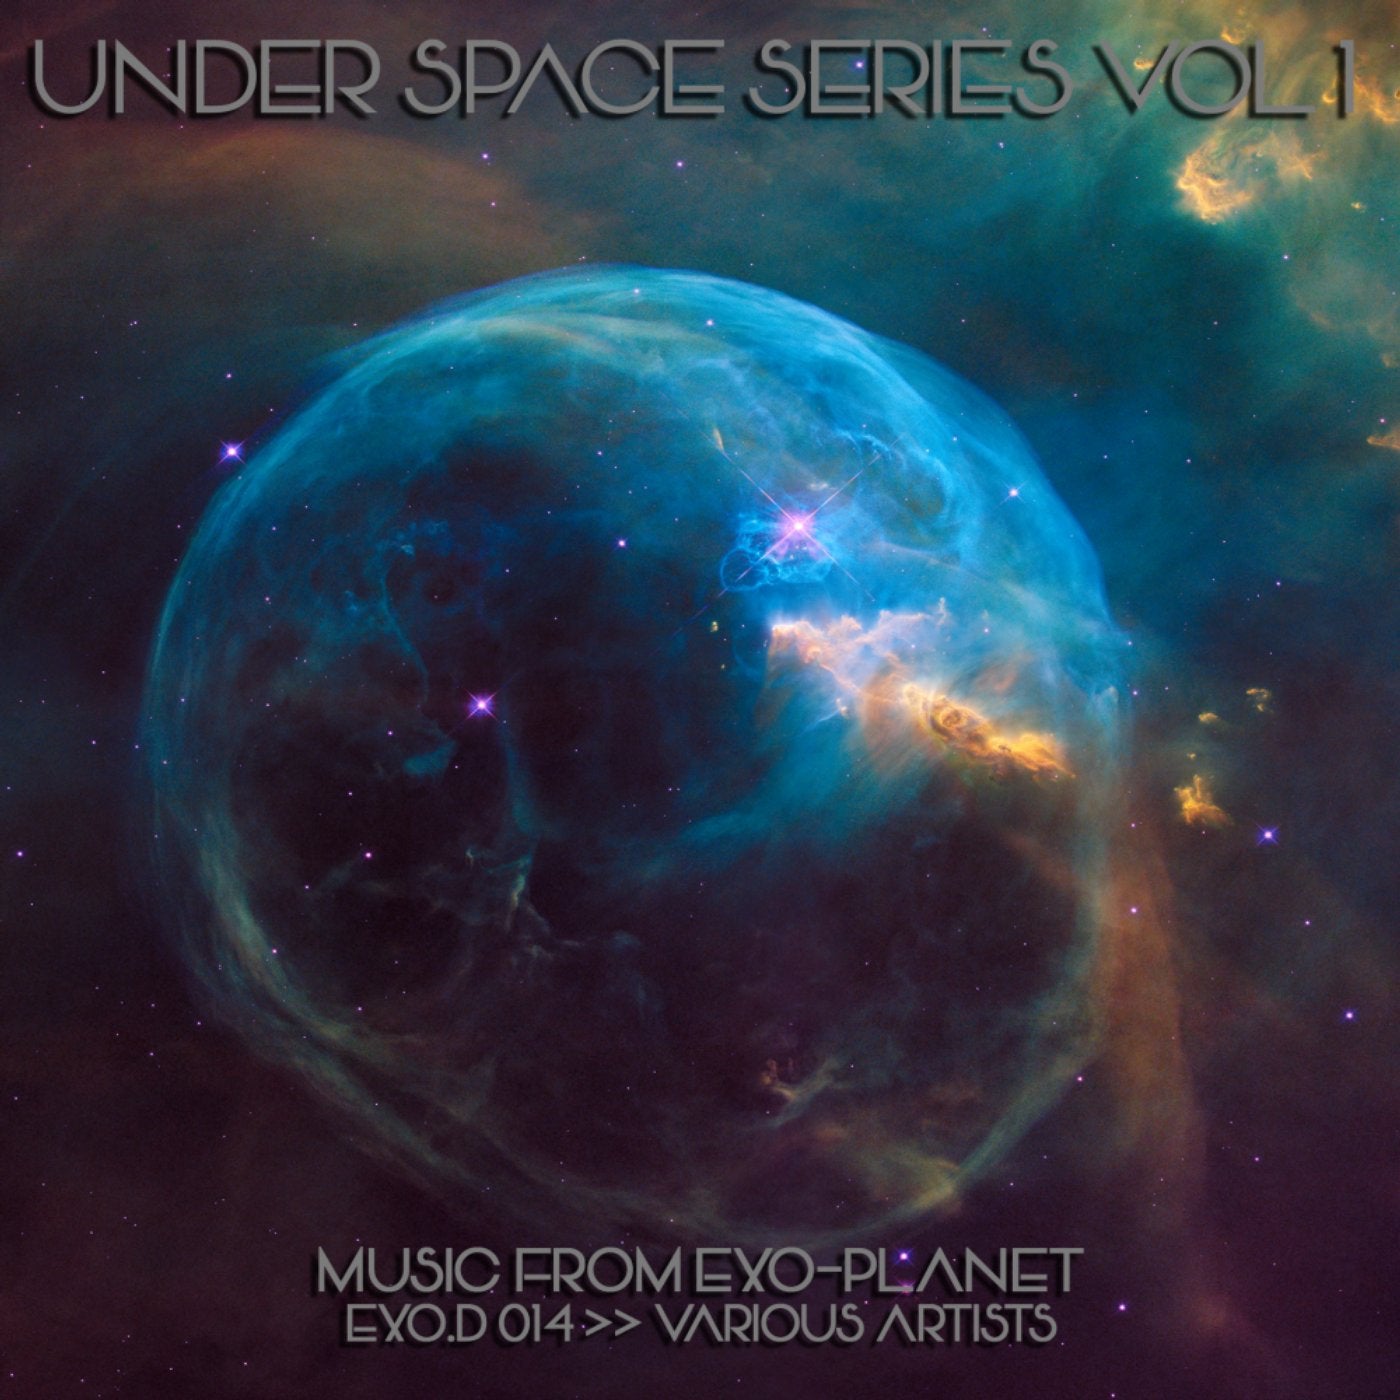 Under Space Series Vol 1